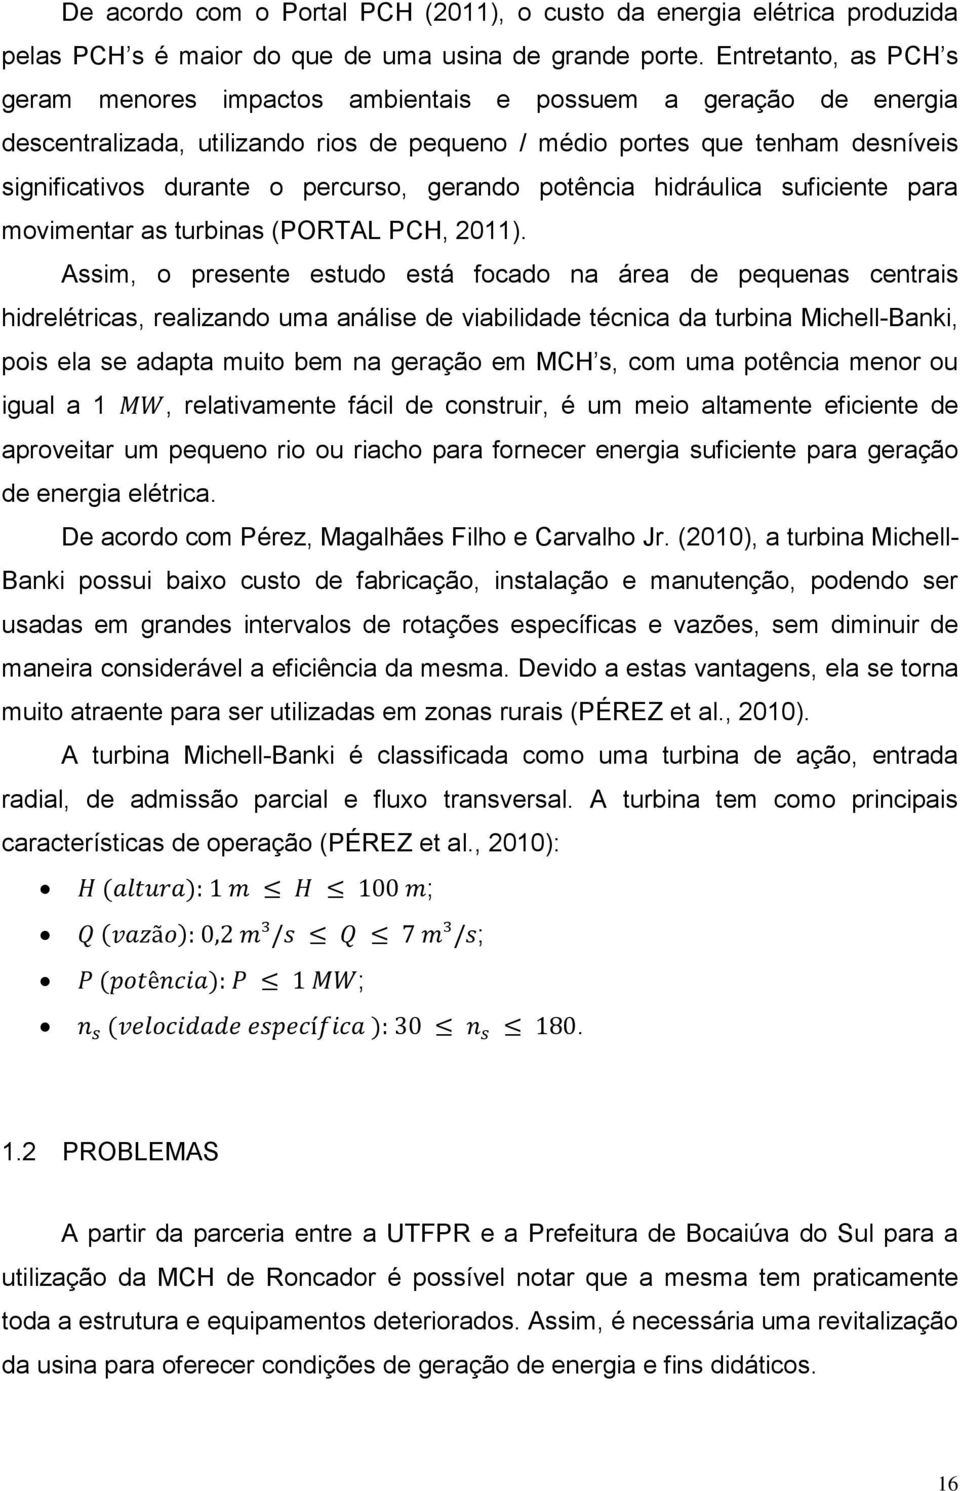 percurso, gerando potência hidráulica suficiente para movimentar as turbinas (PORTAL PCH, 2011).